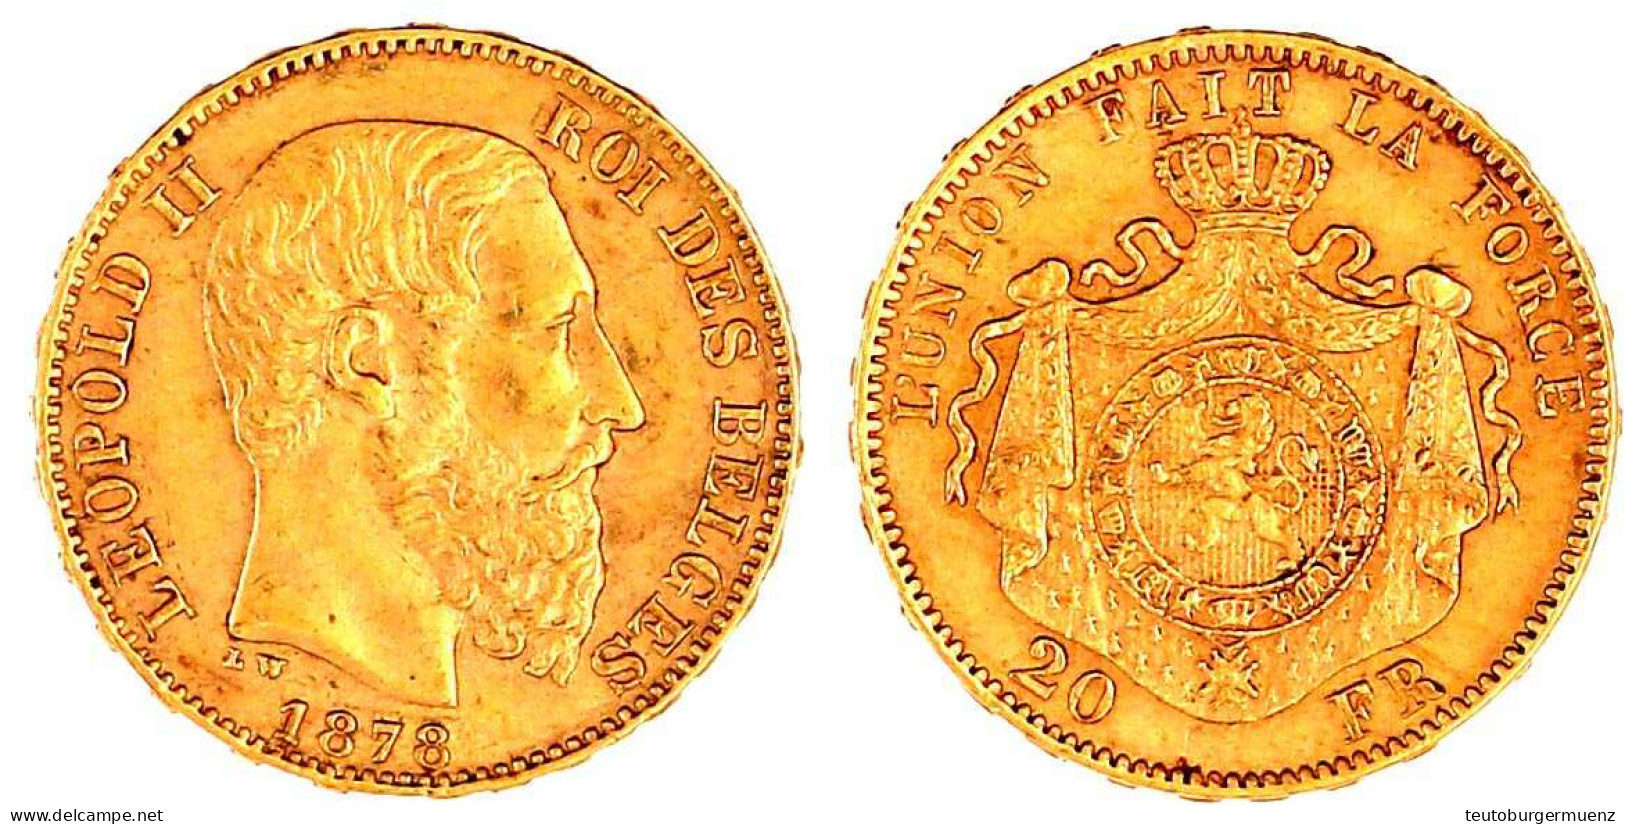 20 Francs 1878. 6,45 G. 900/1000. Vorzüglich. Krause/Mishler 37. - 20 Francs (oro)